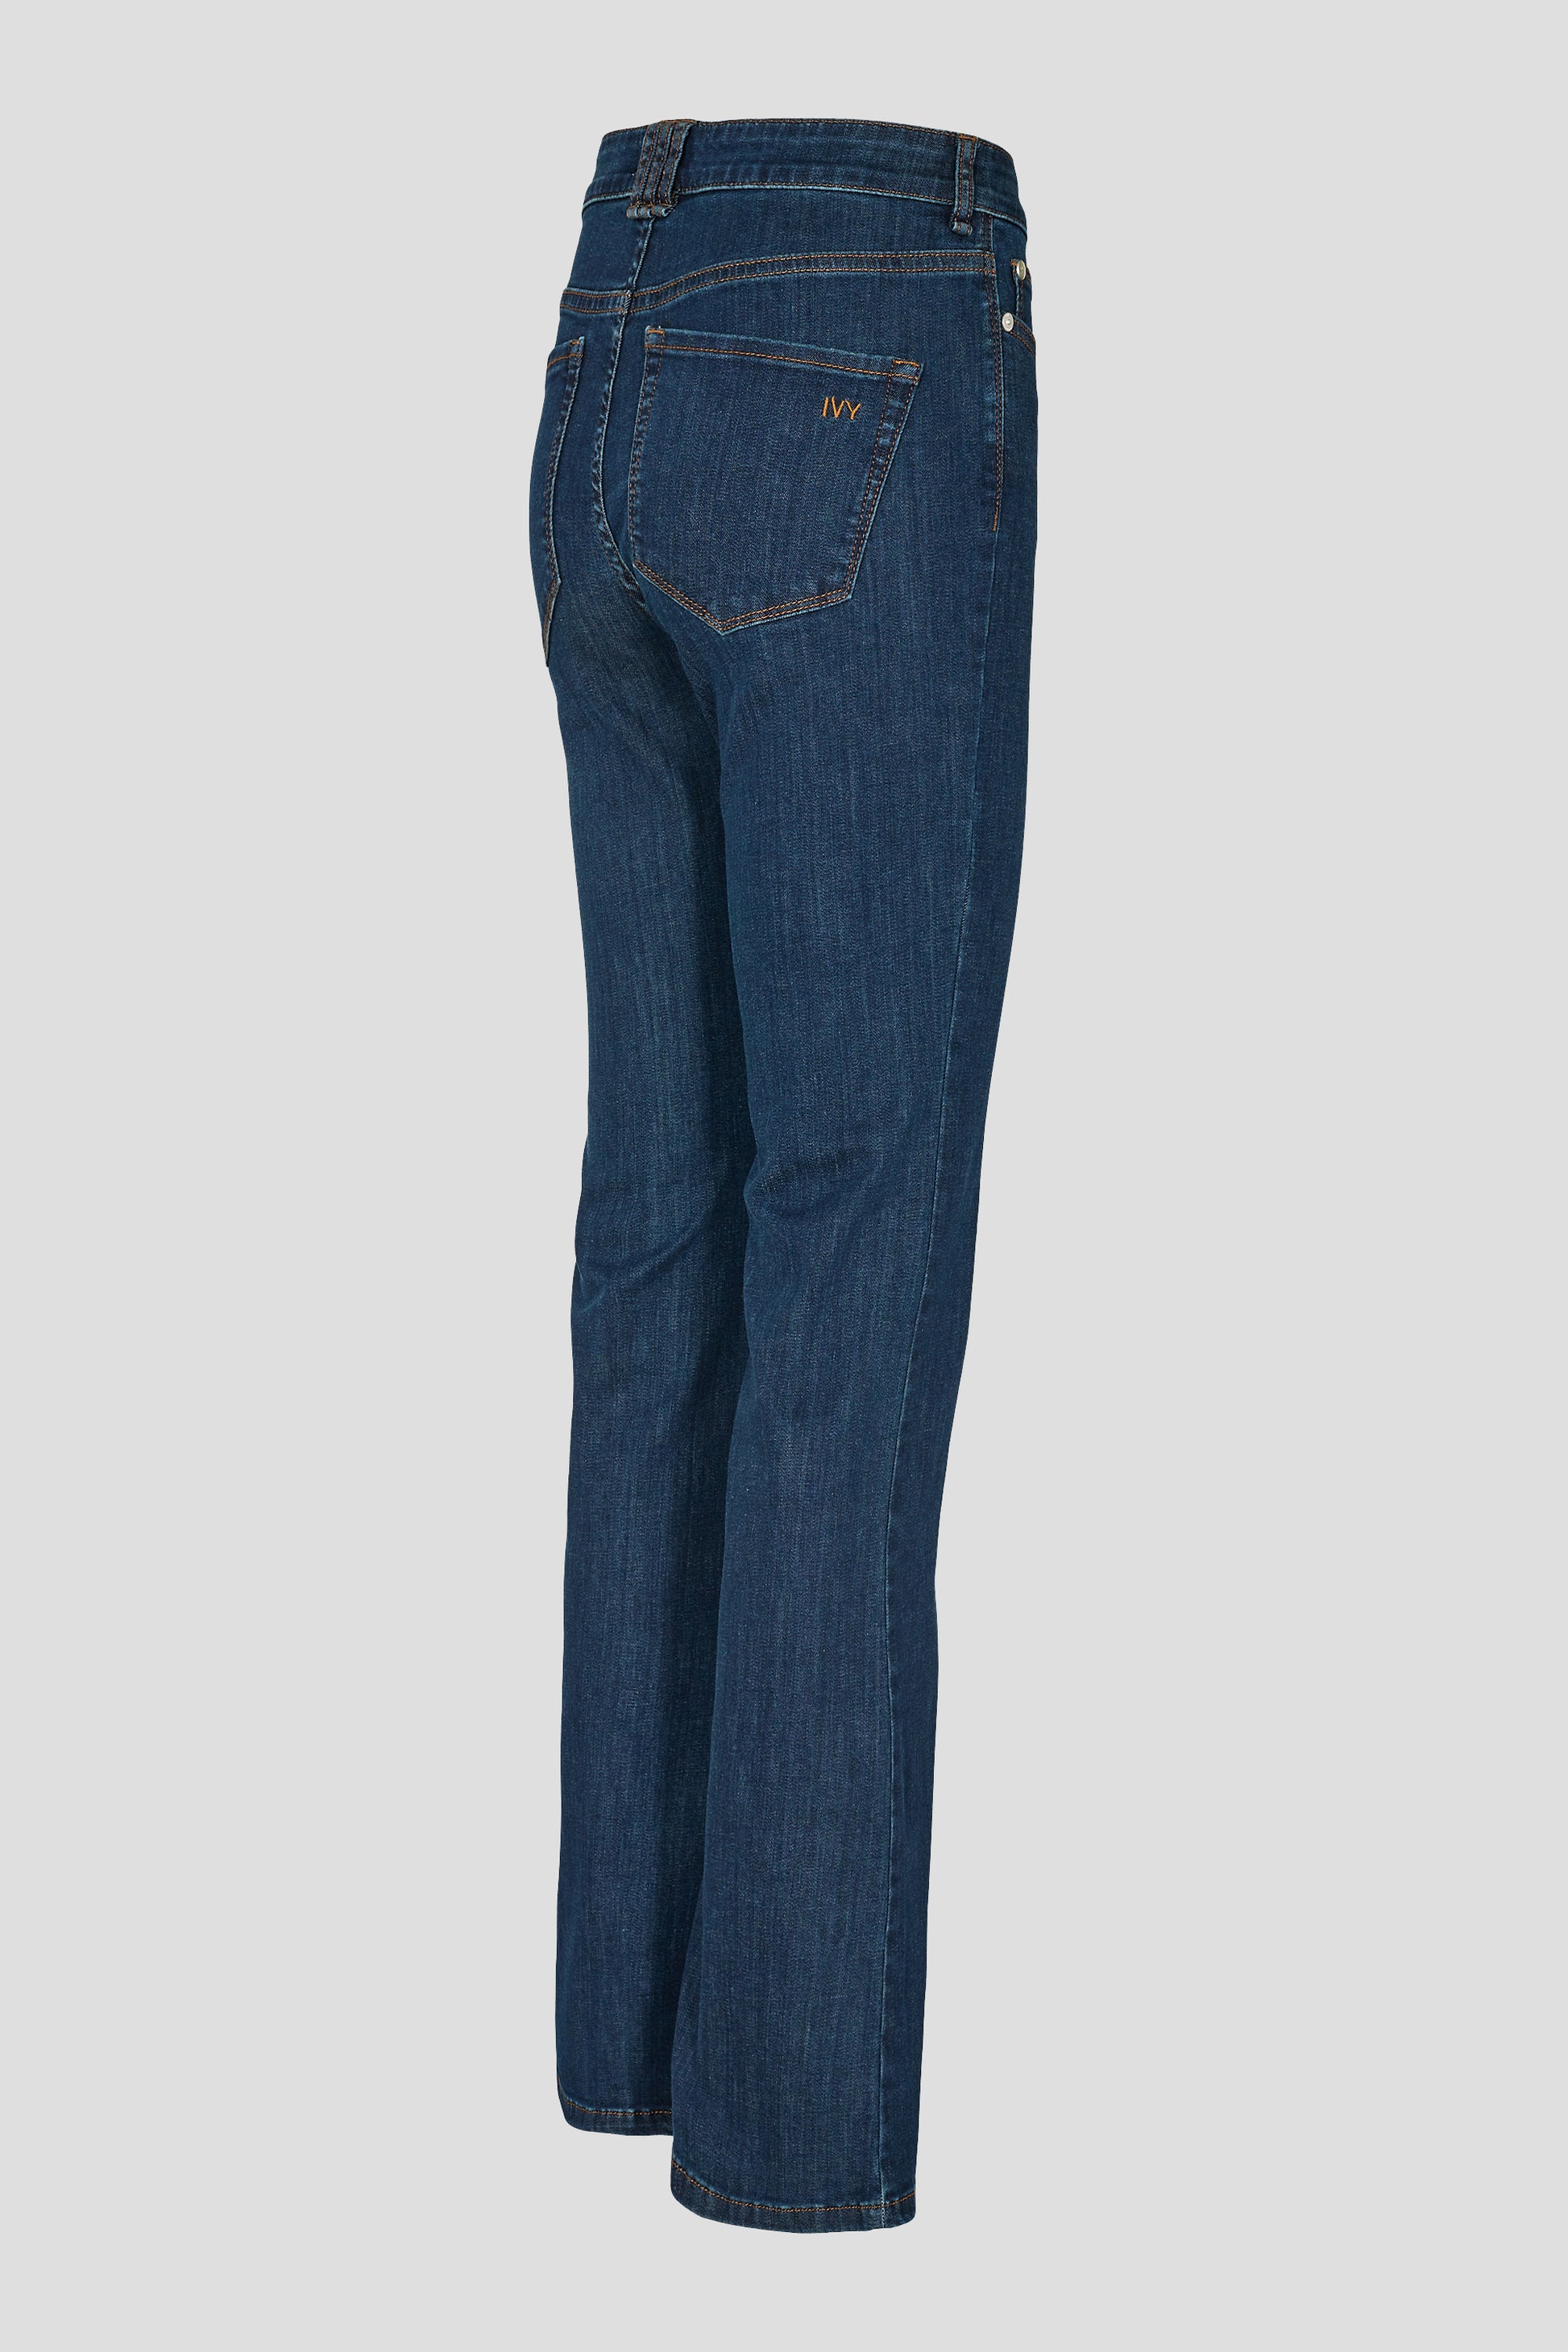 IVY Copenhagen IVY-Tara Jeans Wash Excl. Blue Jeans & Pants